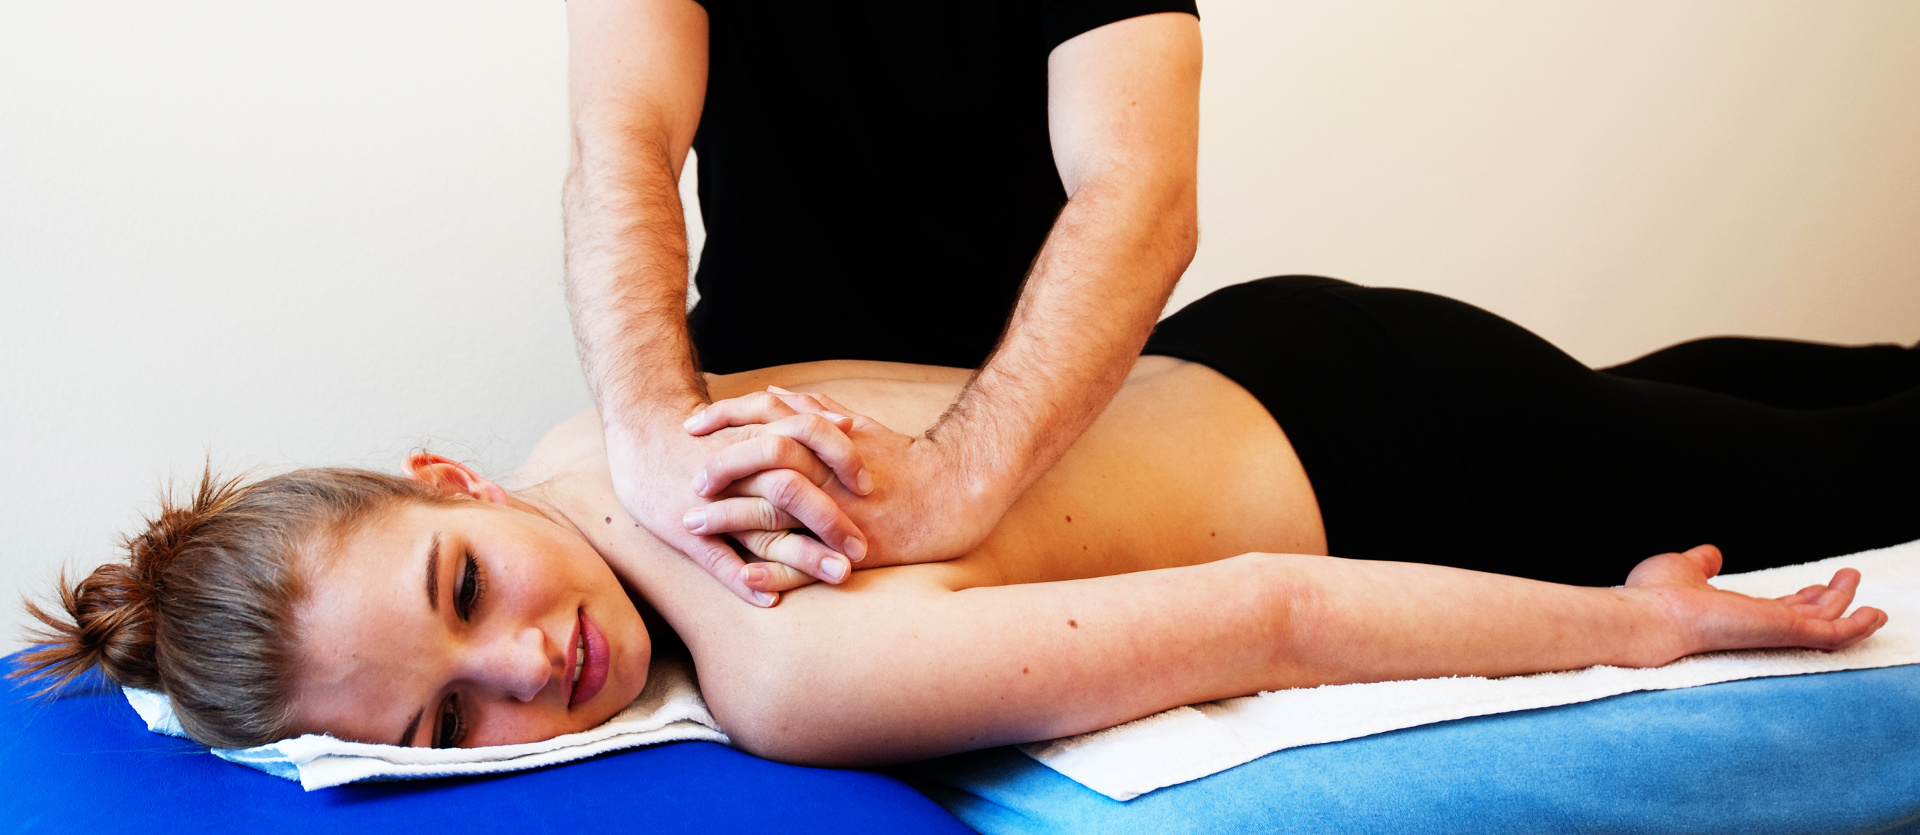 Massagen und Therapeutische Maßnahmen